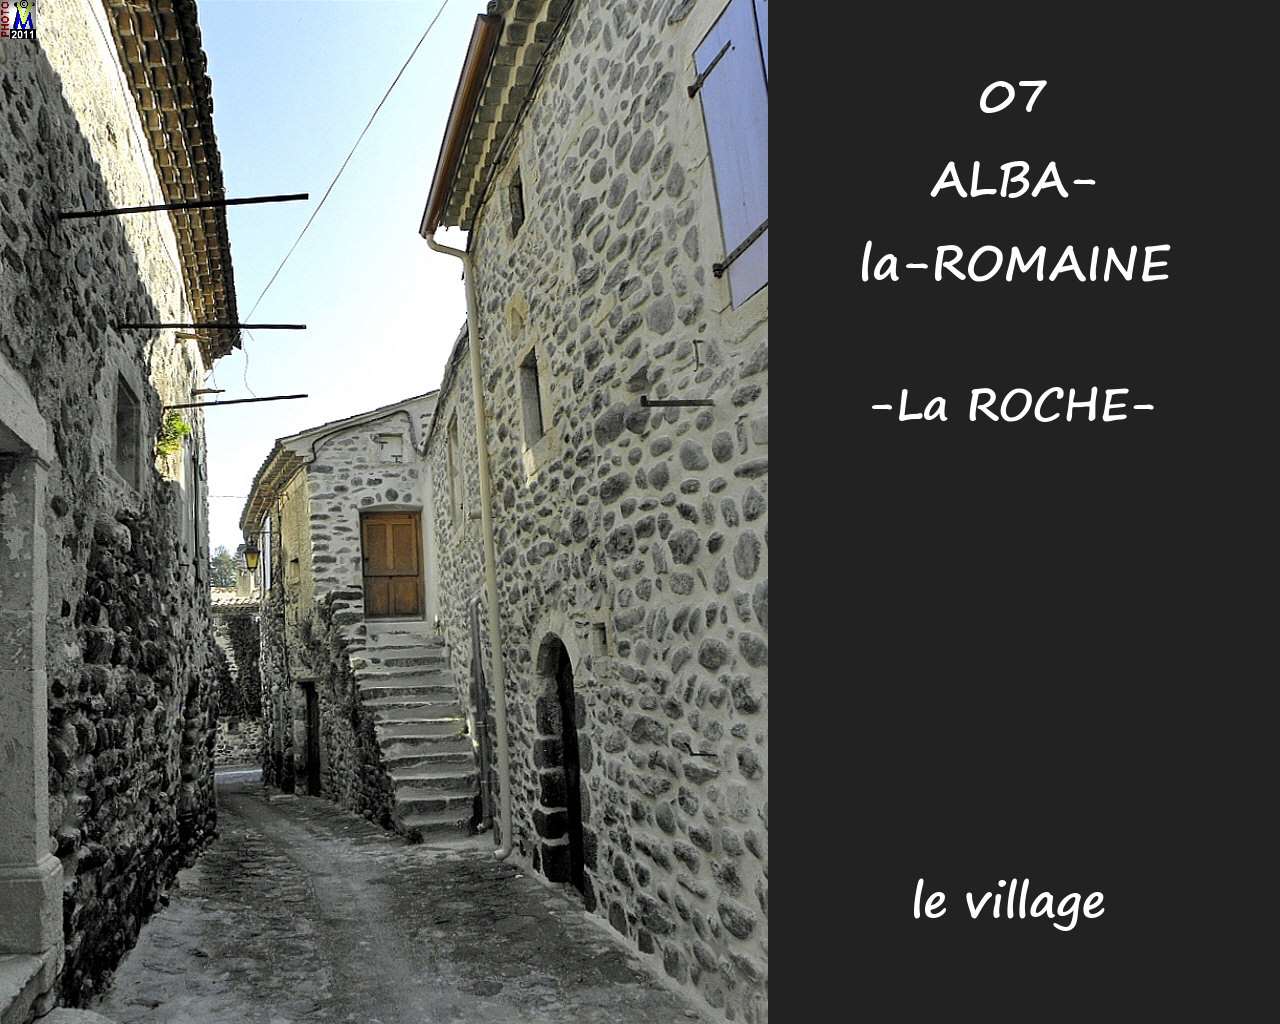 07ALBA-ROMAINEzROCHE_village_104.jpg